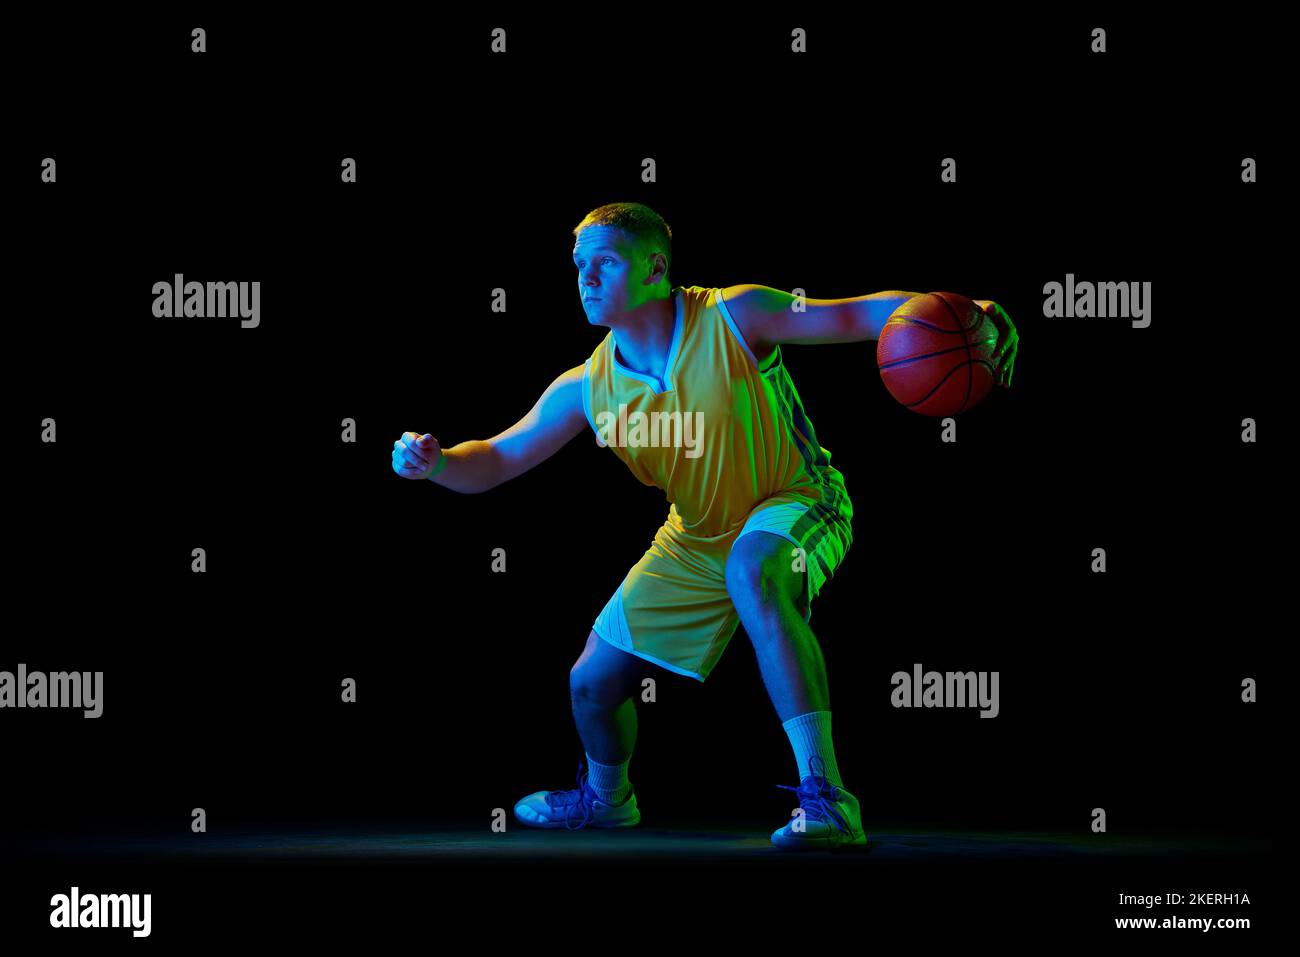 Giocatore di basket professionista in azione con palla isolata su sfondo nero con filtro al neon. Dribbling. Sport, energia, abilità, squadra Foto Stock